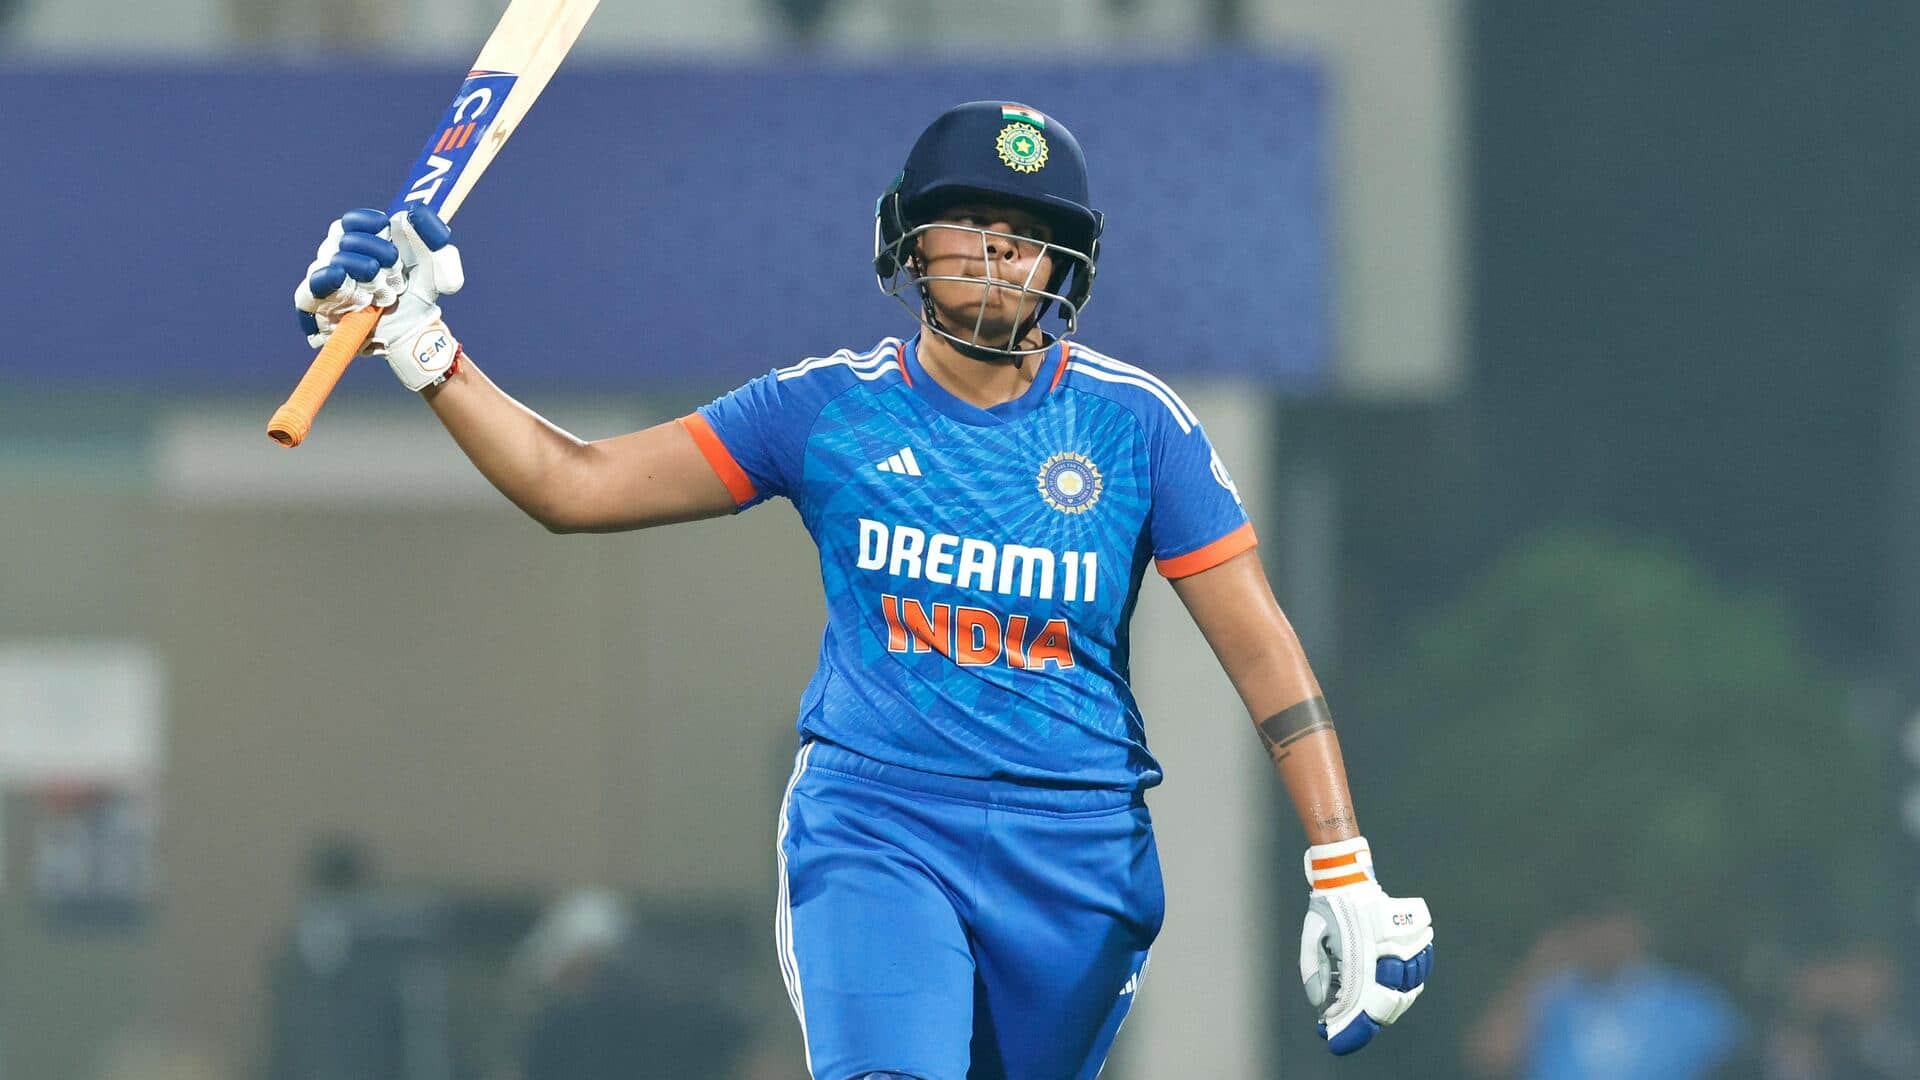 महिला क्रिकेट, भारत बनाम ऑस्ट्रेलिया: शफाली वर्मा ने जड़ा 8वां टी-20 अंतरराष्ट्रीय अर्धशतक, जानिए आंकड़े